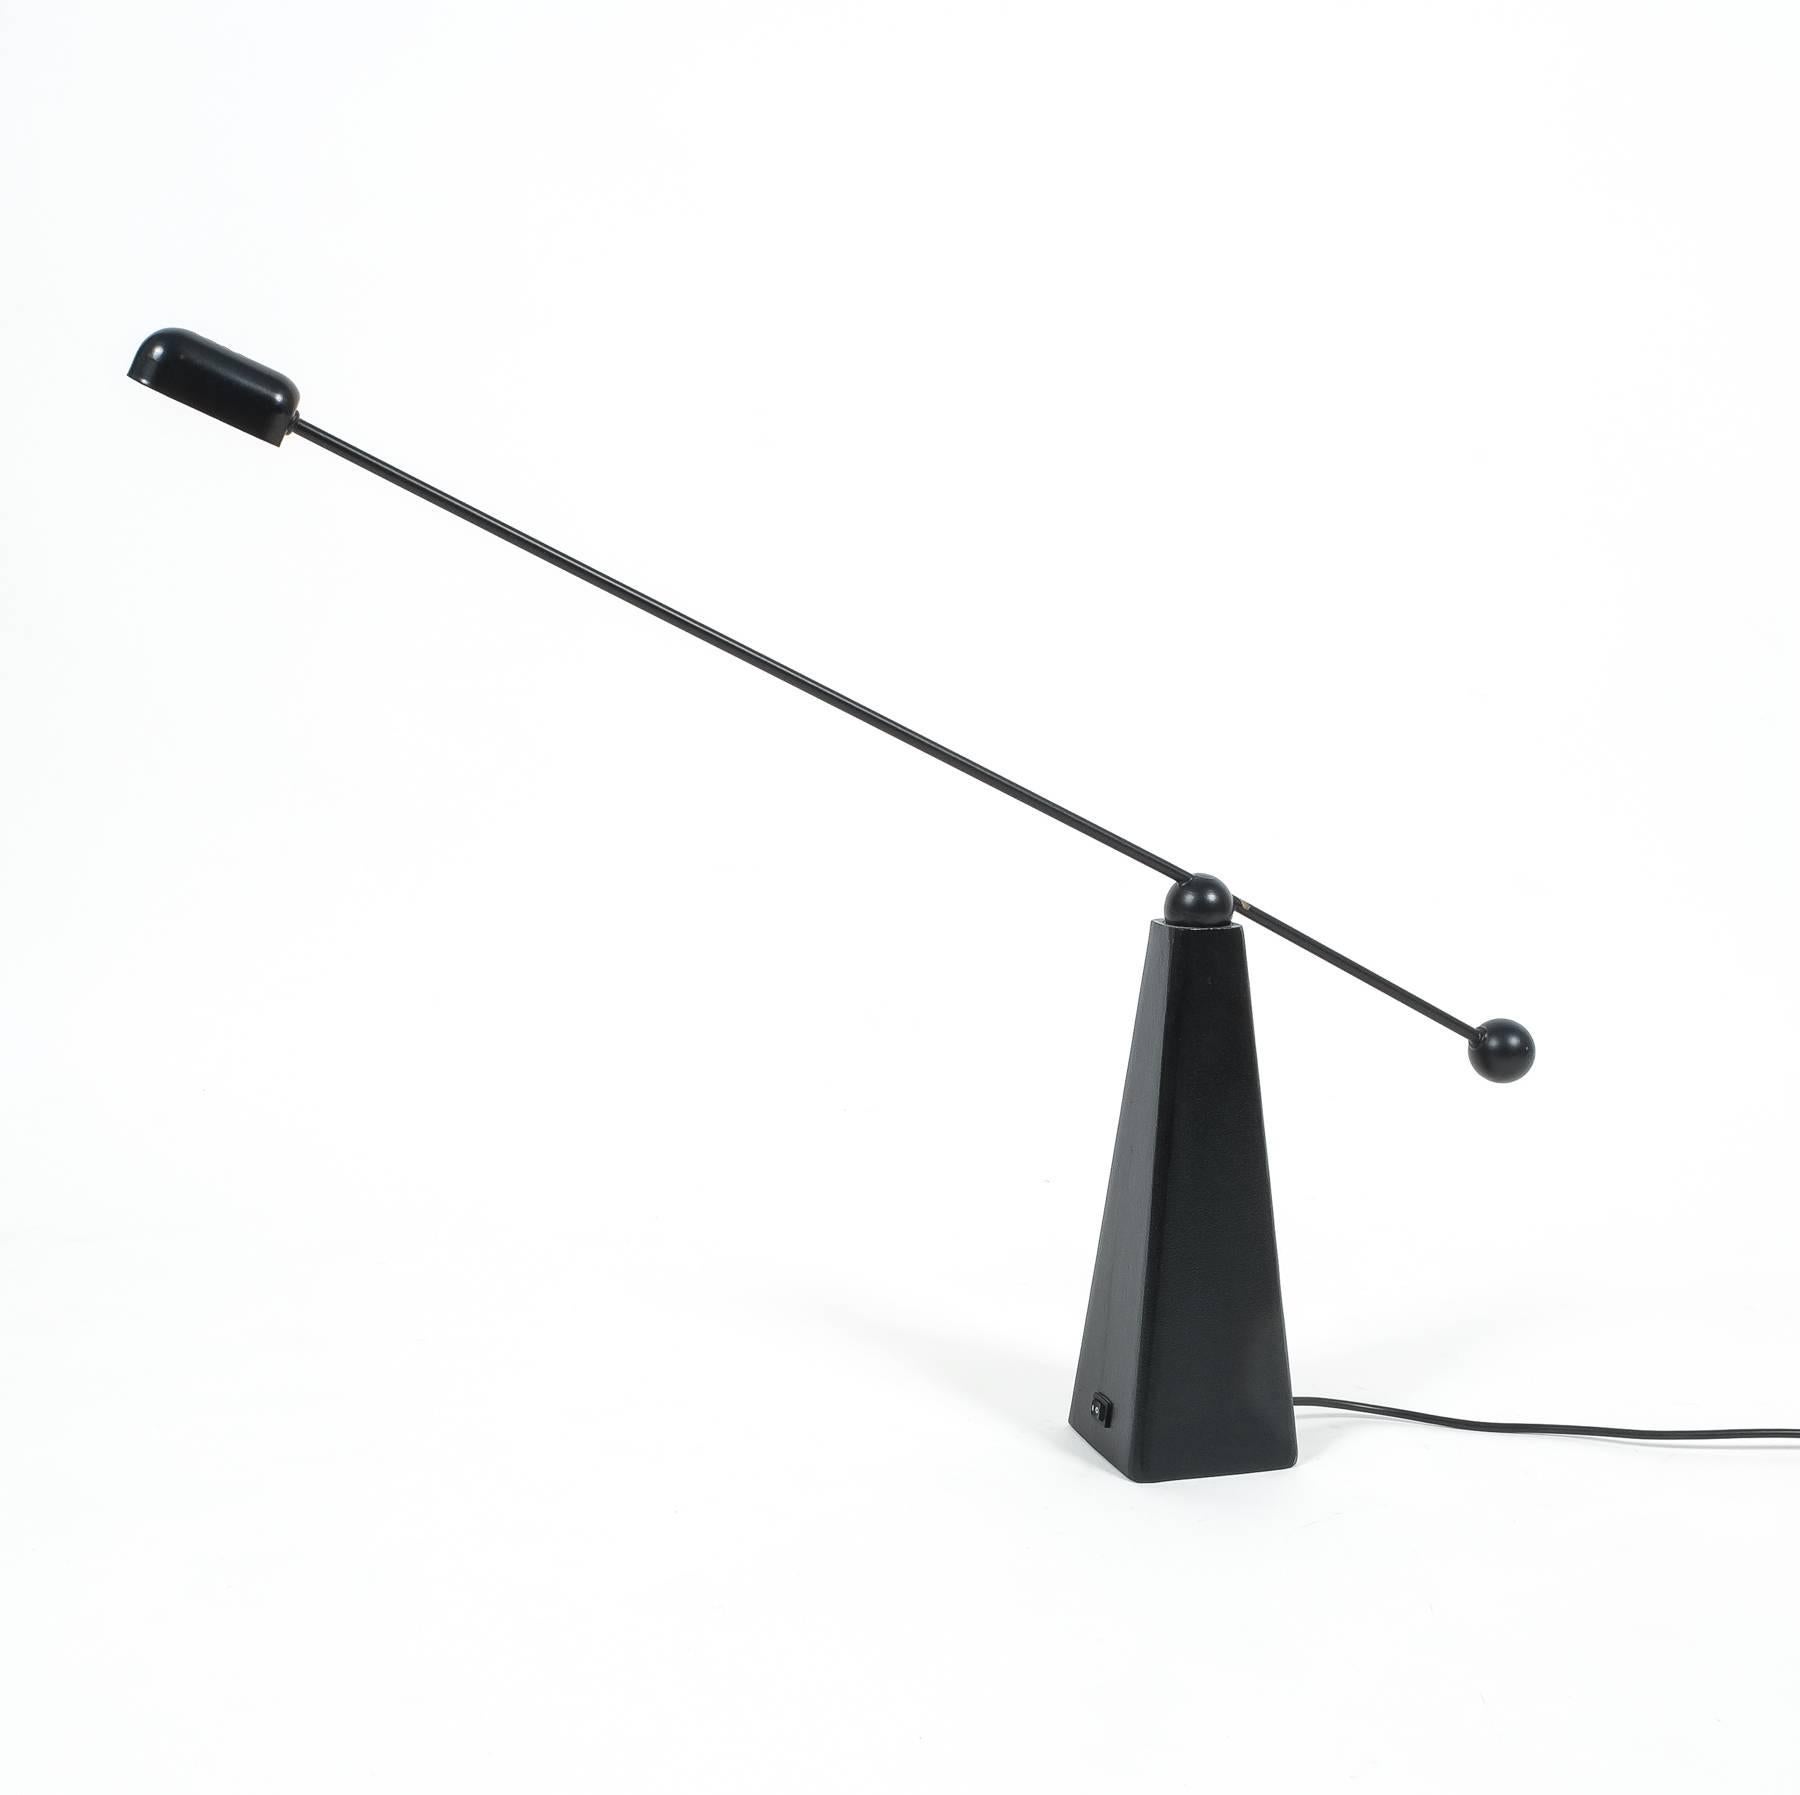 Magnifique lampe de bureau minimaliste en métal noir du designer américain Ron Rezek pour Bieffeplast, Italie. Le bras de contrepoids permet de pivoter et de déplacer la lampe dans toutes les directions. Base pyramidale lourde en métal moulé solide